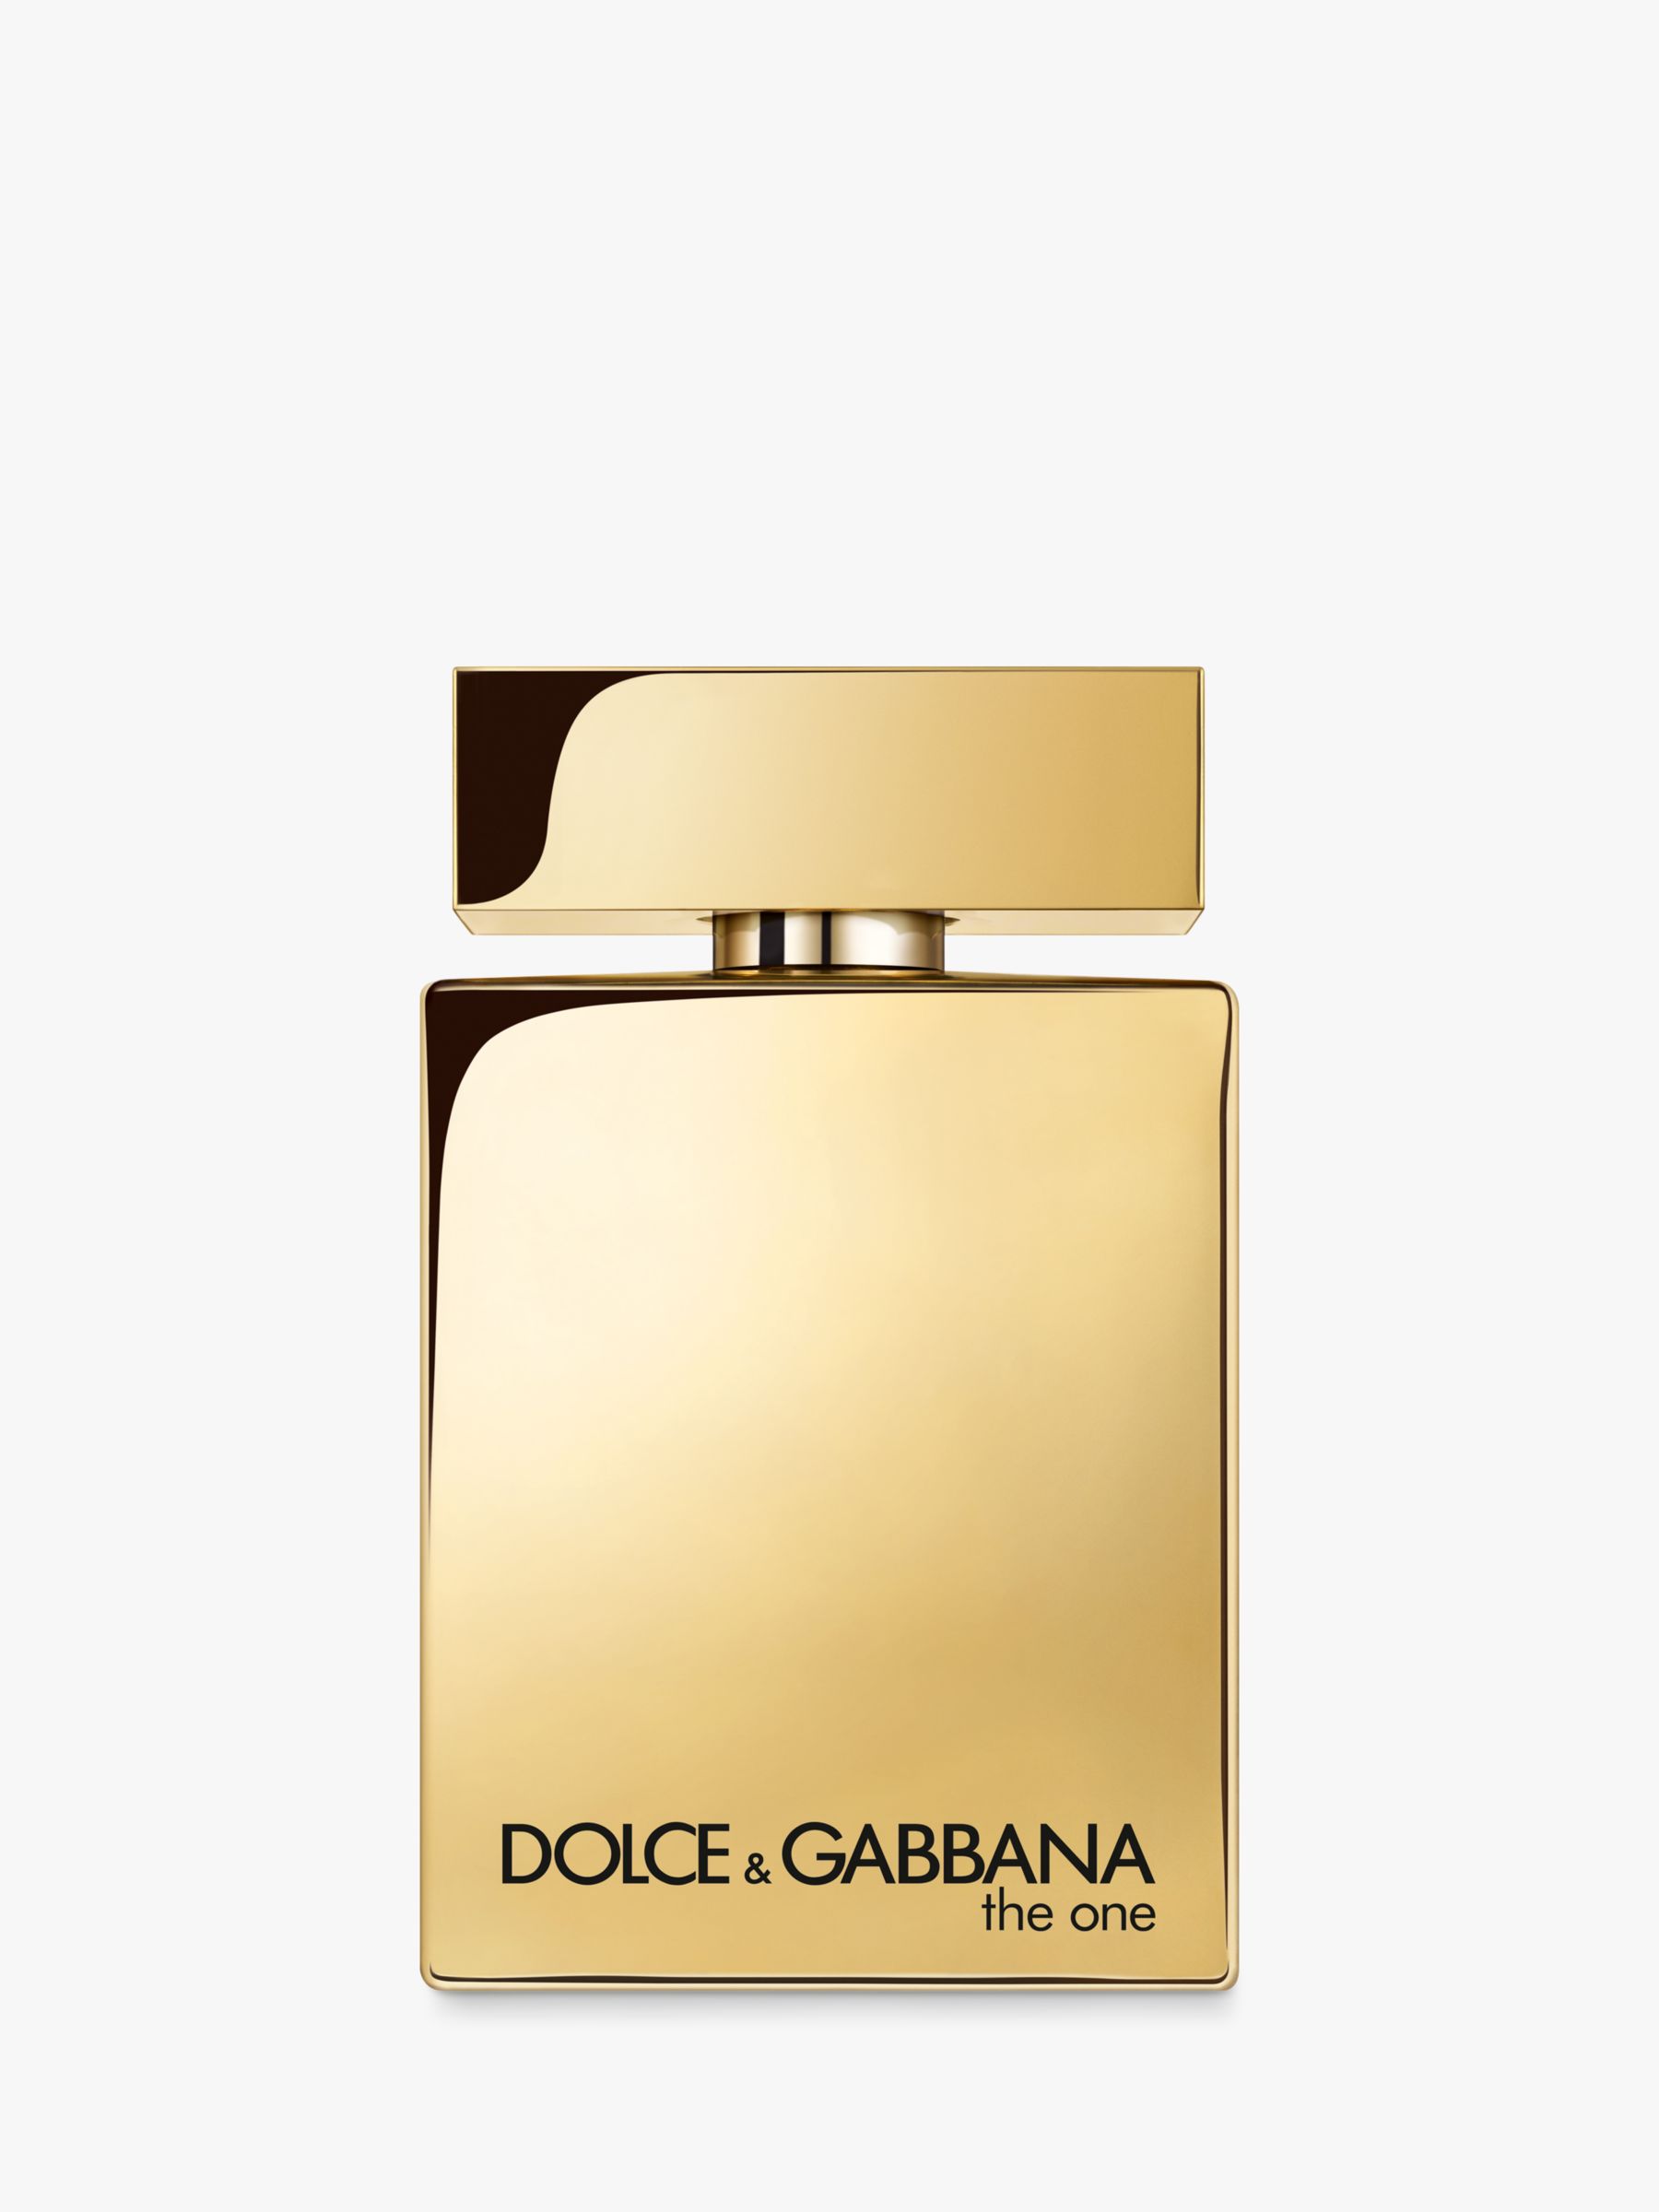 Dolce & Gabbana The One for Men Gold Eau de Parfum, 100ml at John Lewis &  Partners